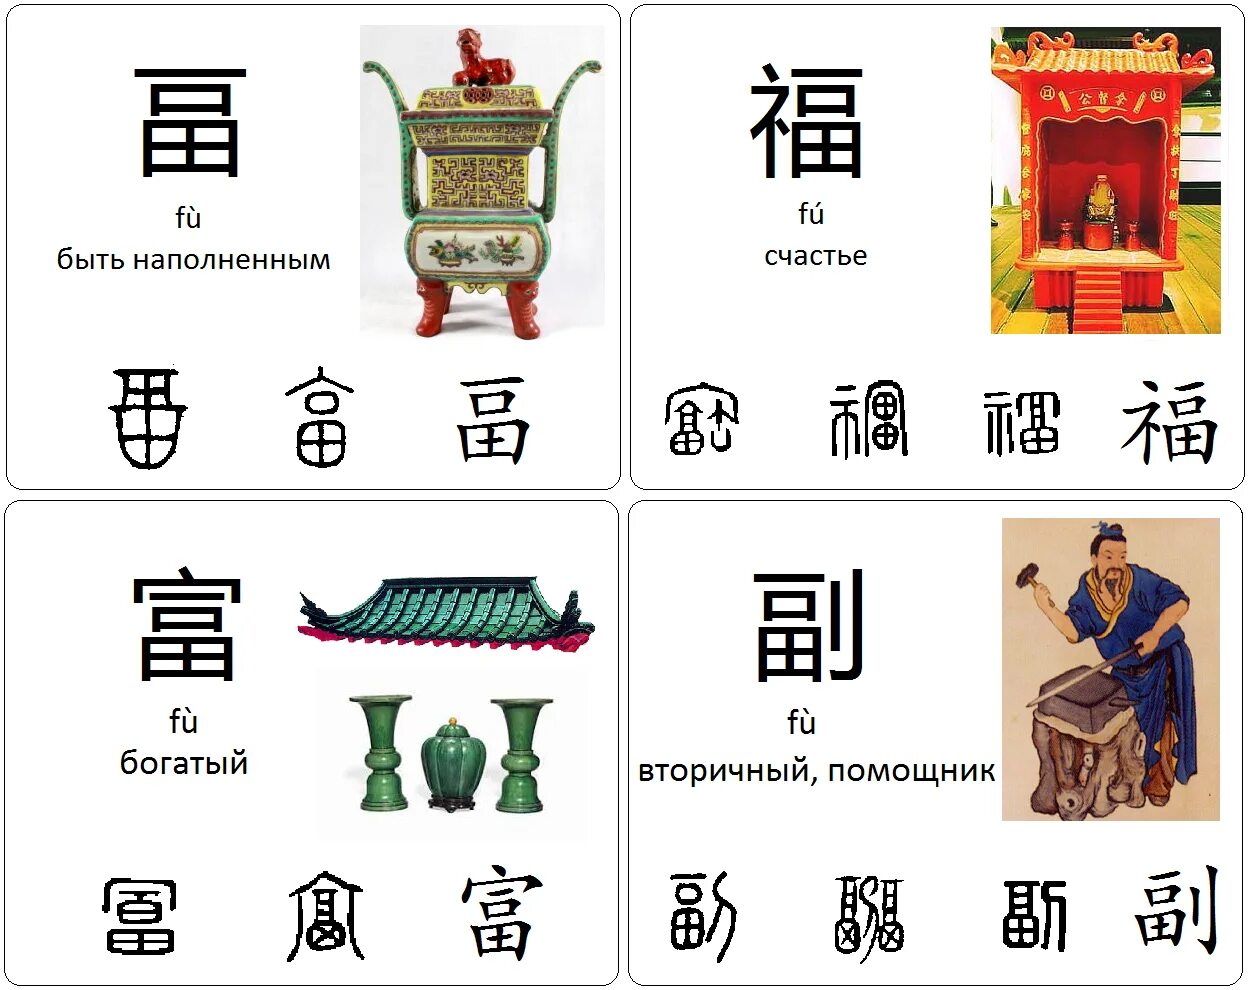 Правильно на китайском. На что похожи китайские иероглифы. Китайский язык на китайском. Китайские иероглифы похожие на предметы. Китайский иероглиф похожий на домик.